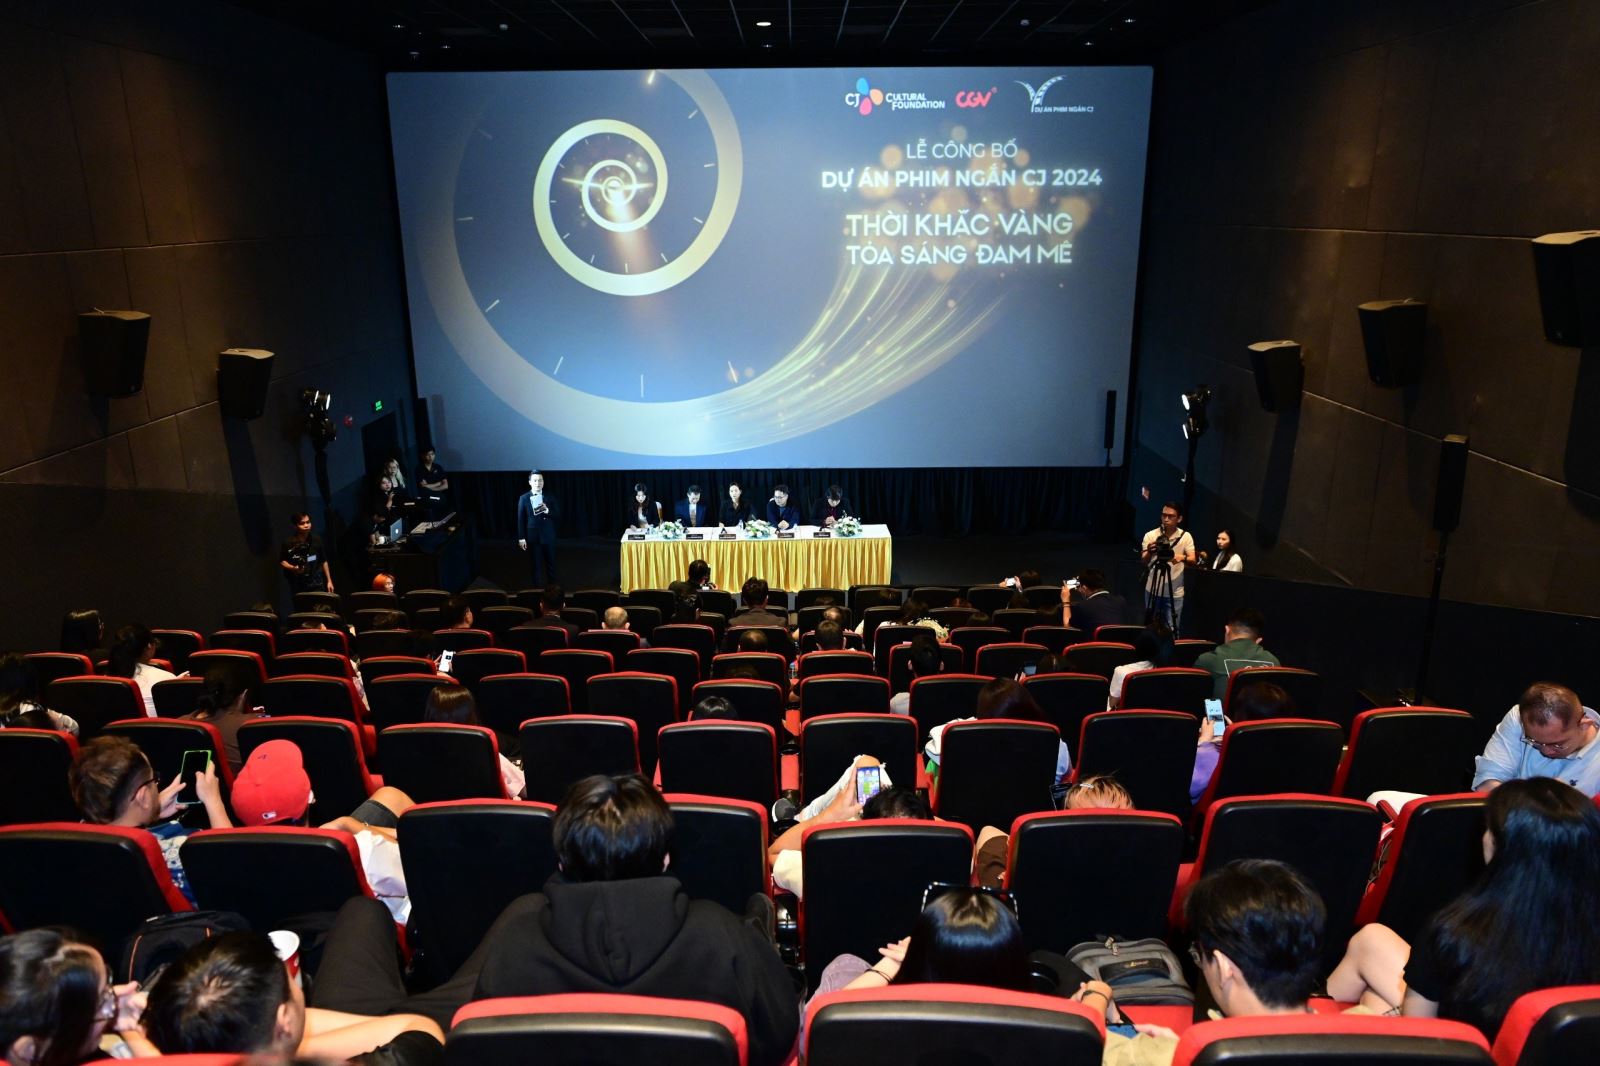 Ngày 8-5, tại CGV Sư Vạn Hạnh (TP.HCM), Lễ công bố Dự án phim ngắn CJ 2024 với chủ đề Thời khắc vàng – tỏa sáng đam mê đã diễn ra với sự tham gia của nhiều đạo diễn, nhà sản xuất điện ảnh và hàng trăm bạn trẻ yêu điện ảnh.